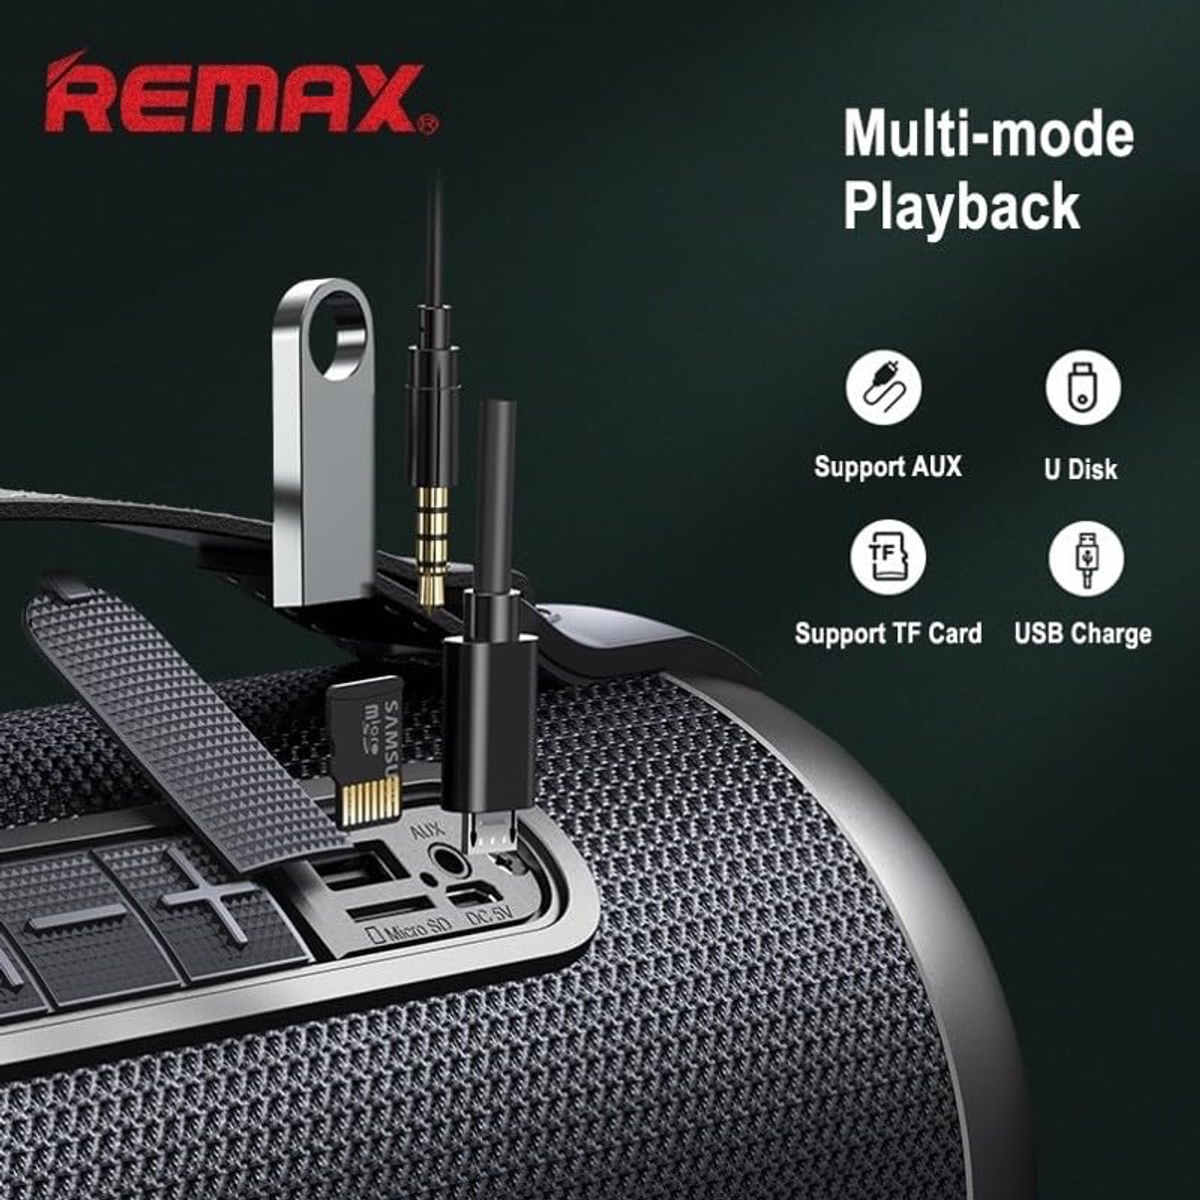 Schwarz REMAX RB-M43 Bluetooth Lautsprecher,